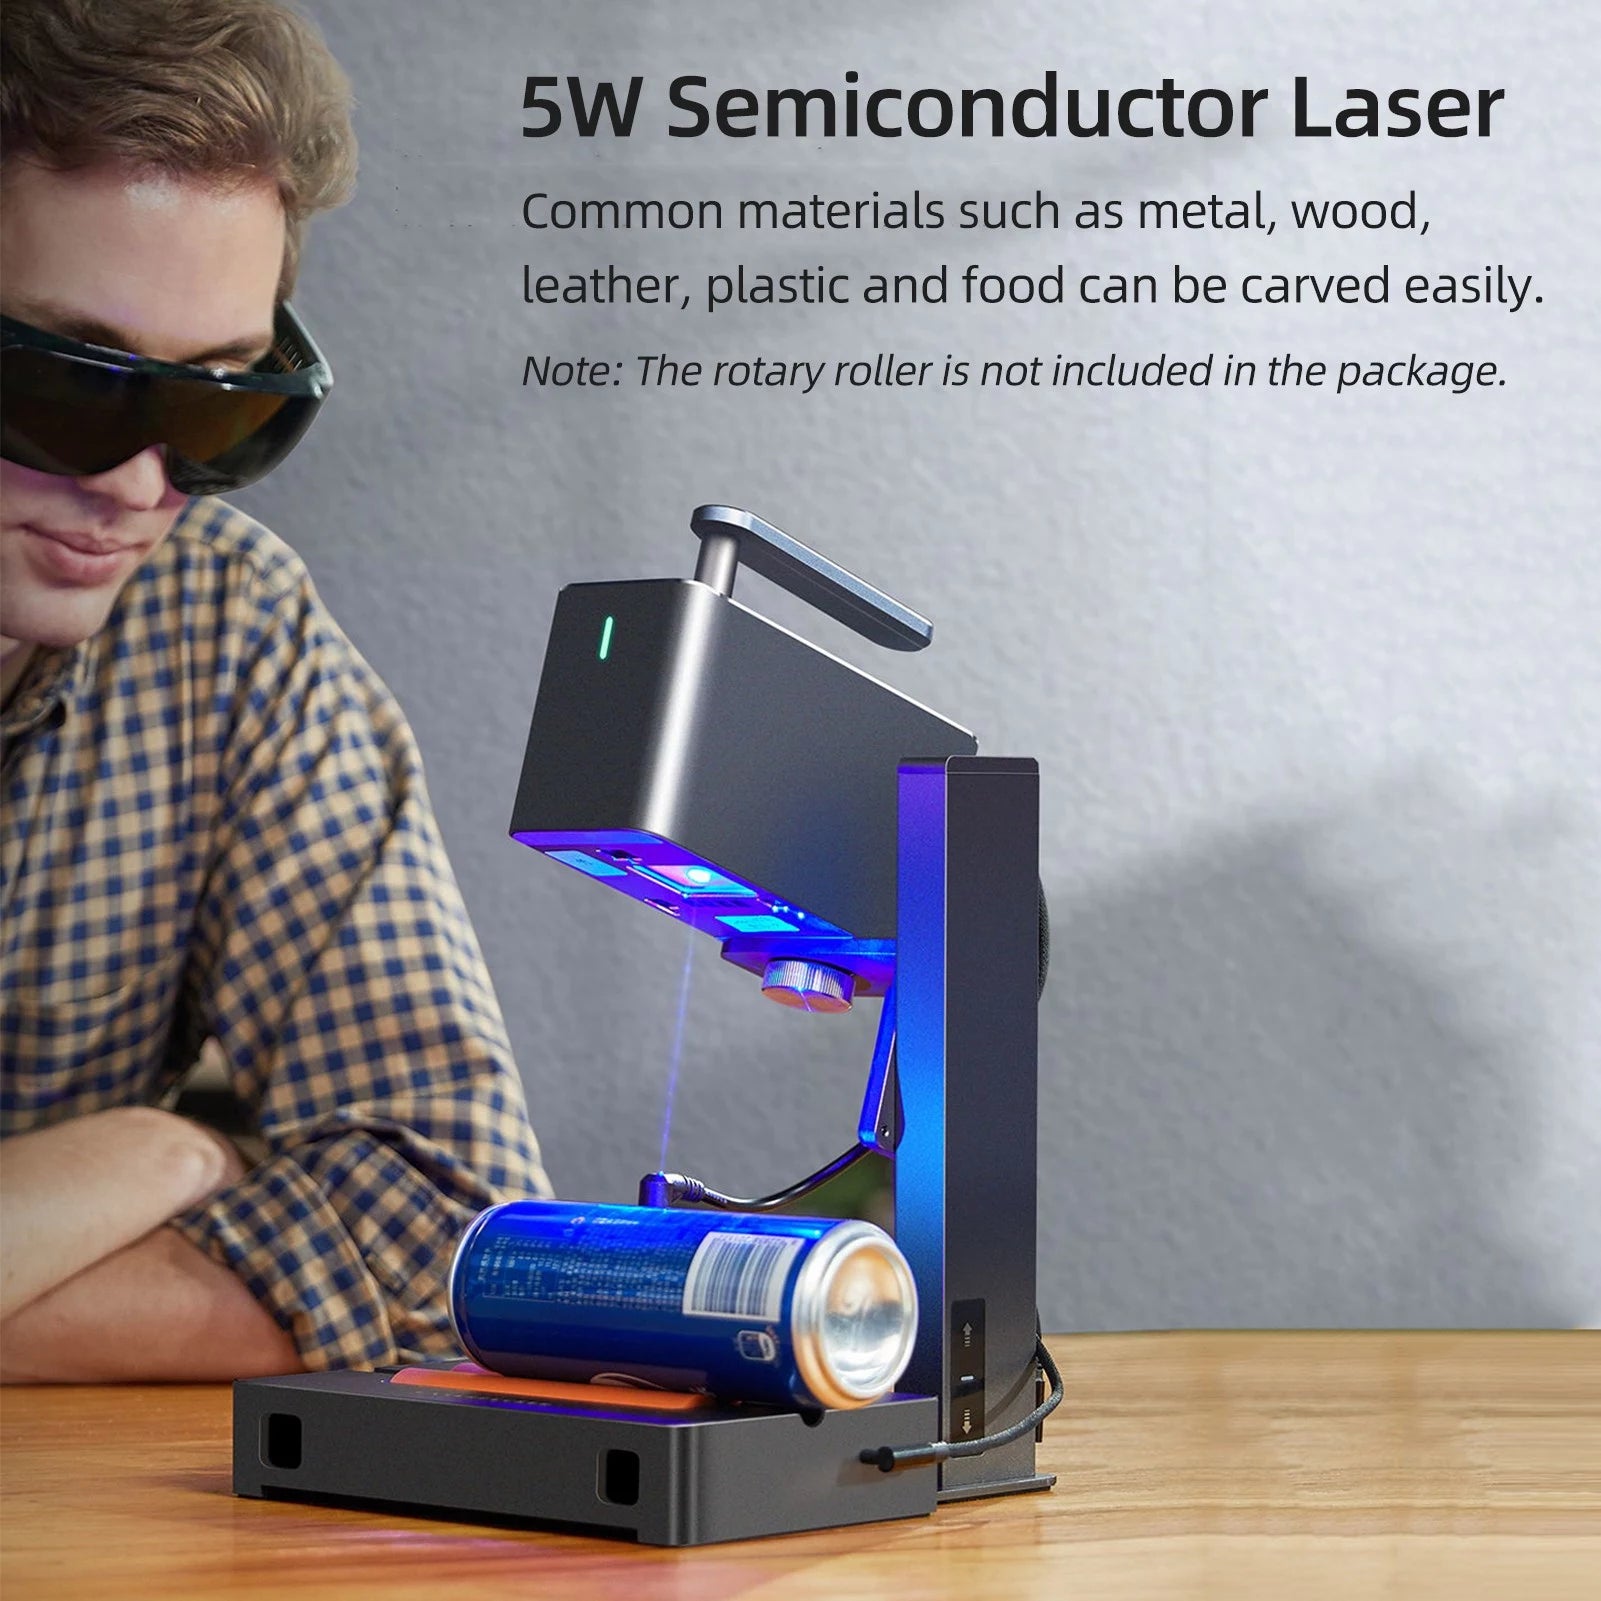 Laser Pecker 4 Power Setting Equivilancy - LightBurn Hardware